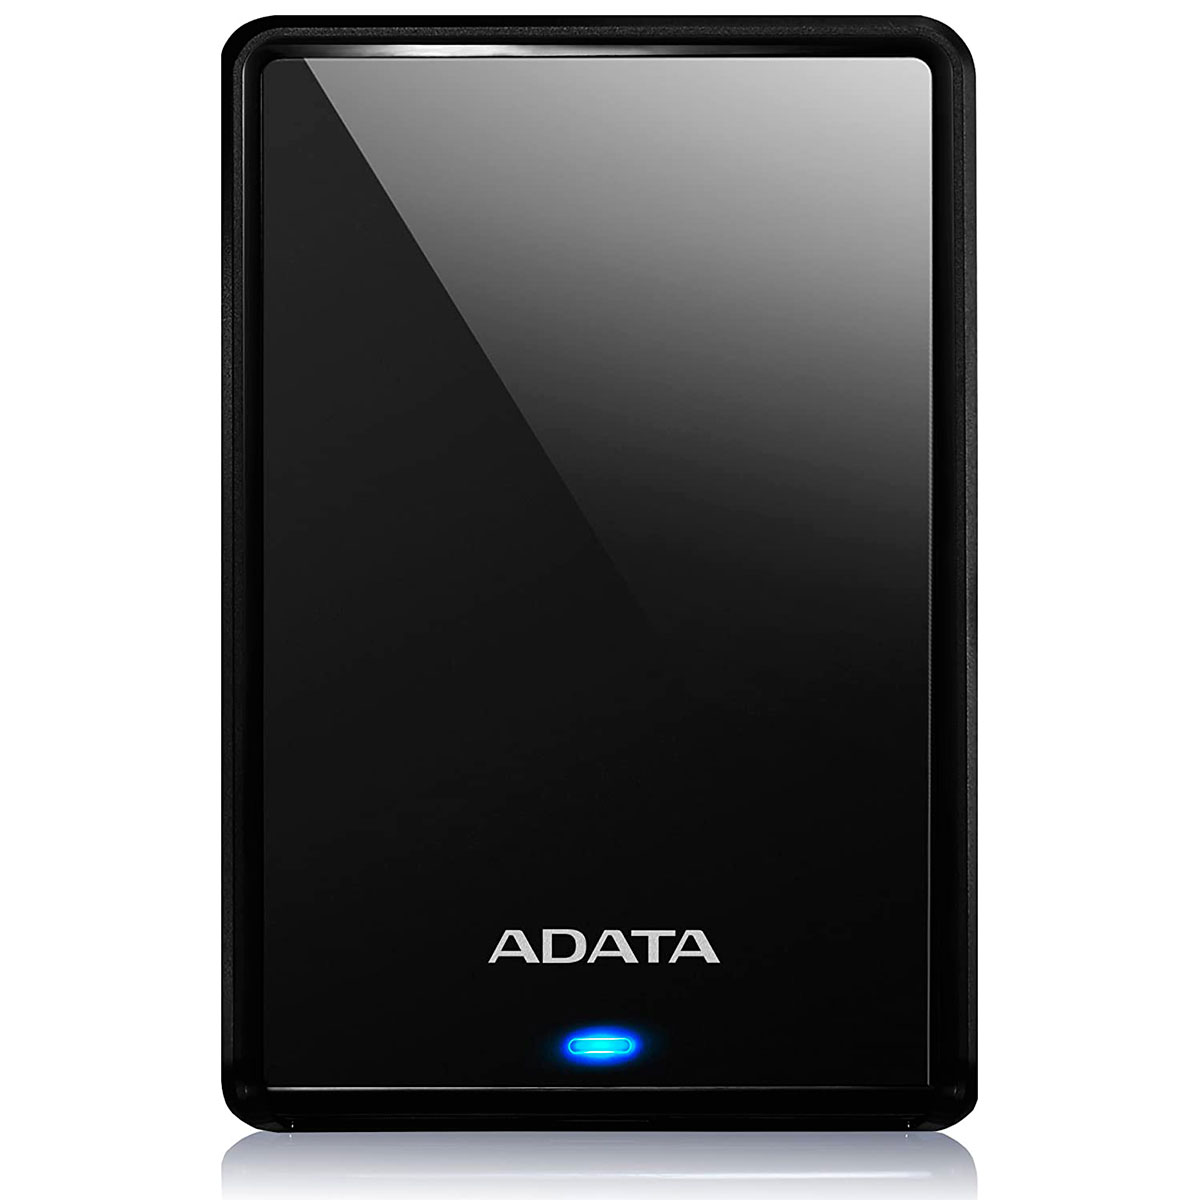 HD Externo 4TB Portátil Adata HV620S - Design Slim - USB 3.2 - Preto - AHV620S-4TU31-CBK